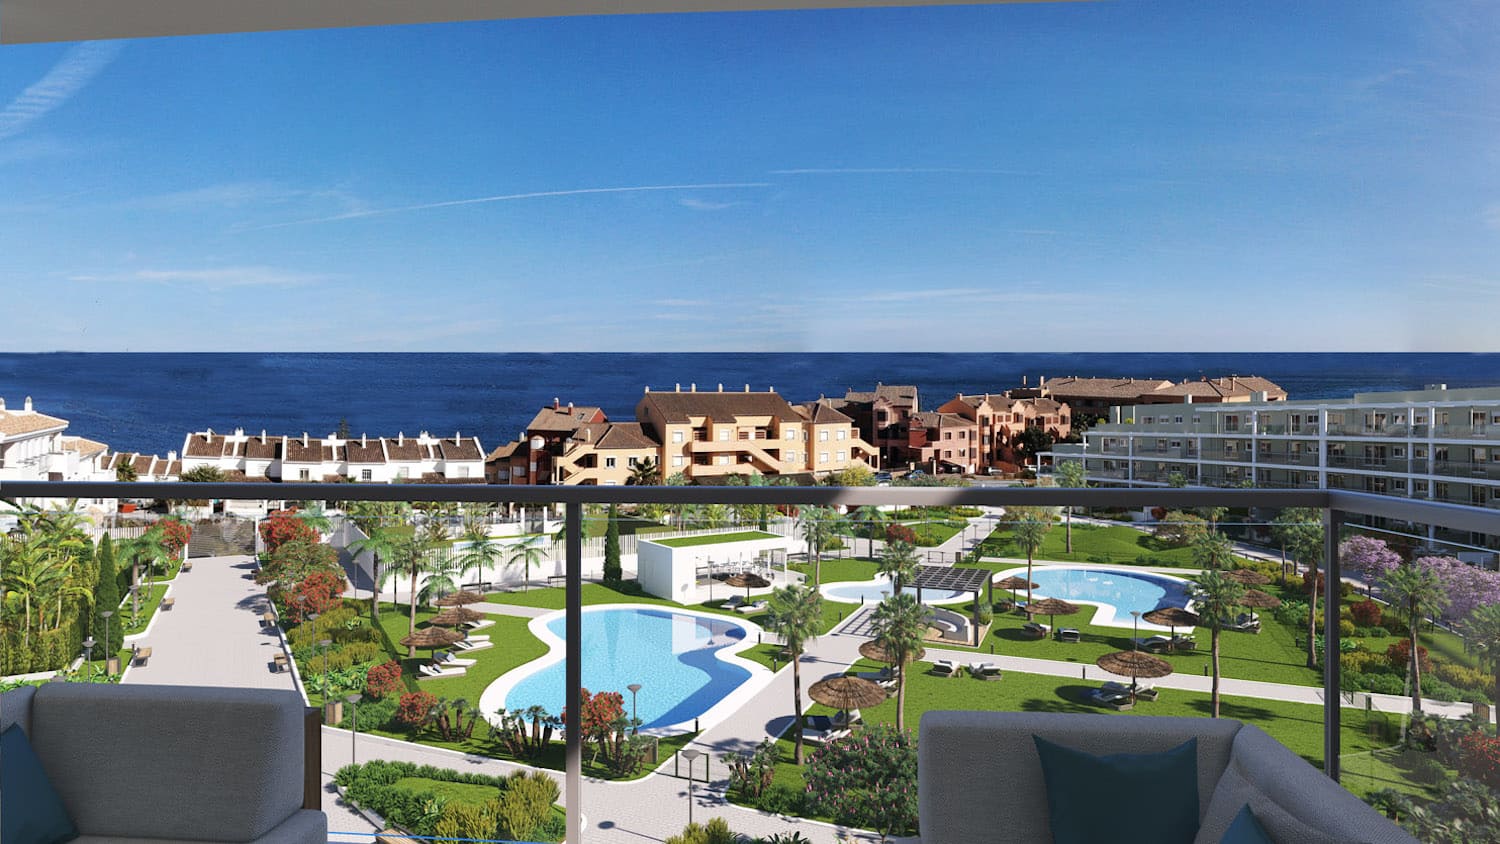 A vendre au bord de la mer à Manilva ! À partir de 244.000€ appartements de 2 et 3 chambres. A 3 minutes de la plage.